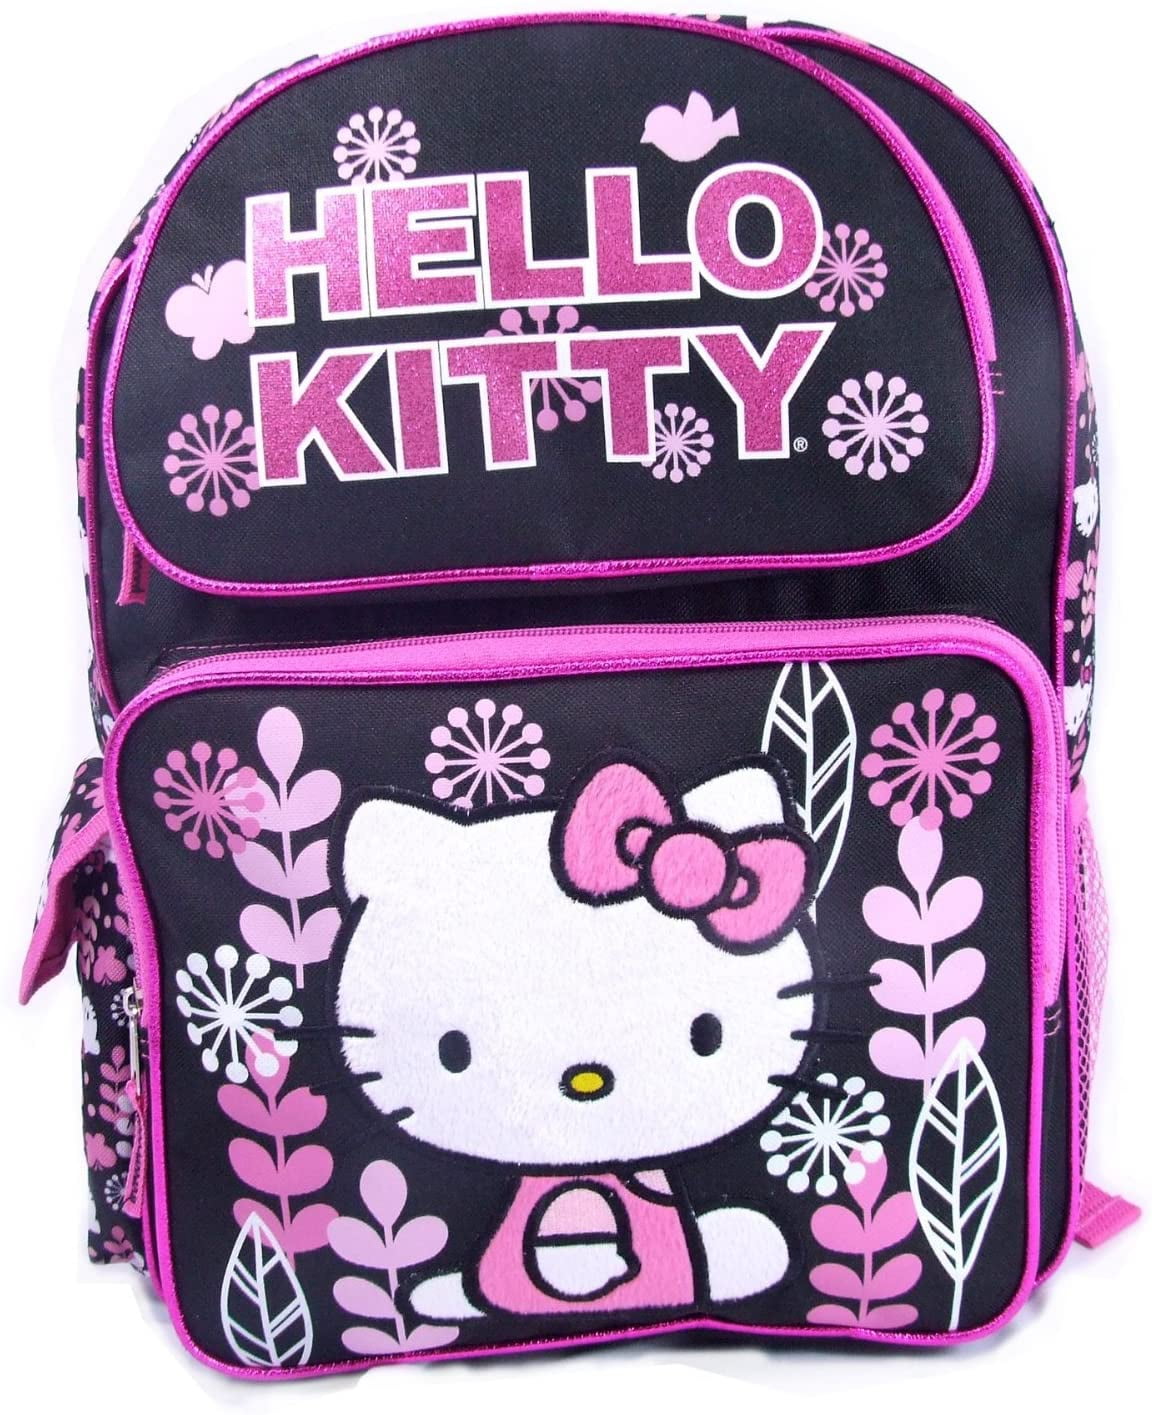 Buy GOTH Perhk Kpop BLACKPINK Backpack JISOO JENNIE ROSE LISA Backpack Kpop  Gift Merchandise Daypack Laptop Bag College School Bookbag Online at  desertcartINDIA